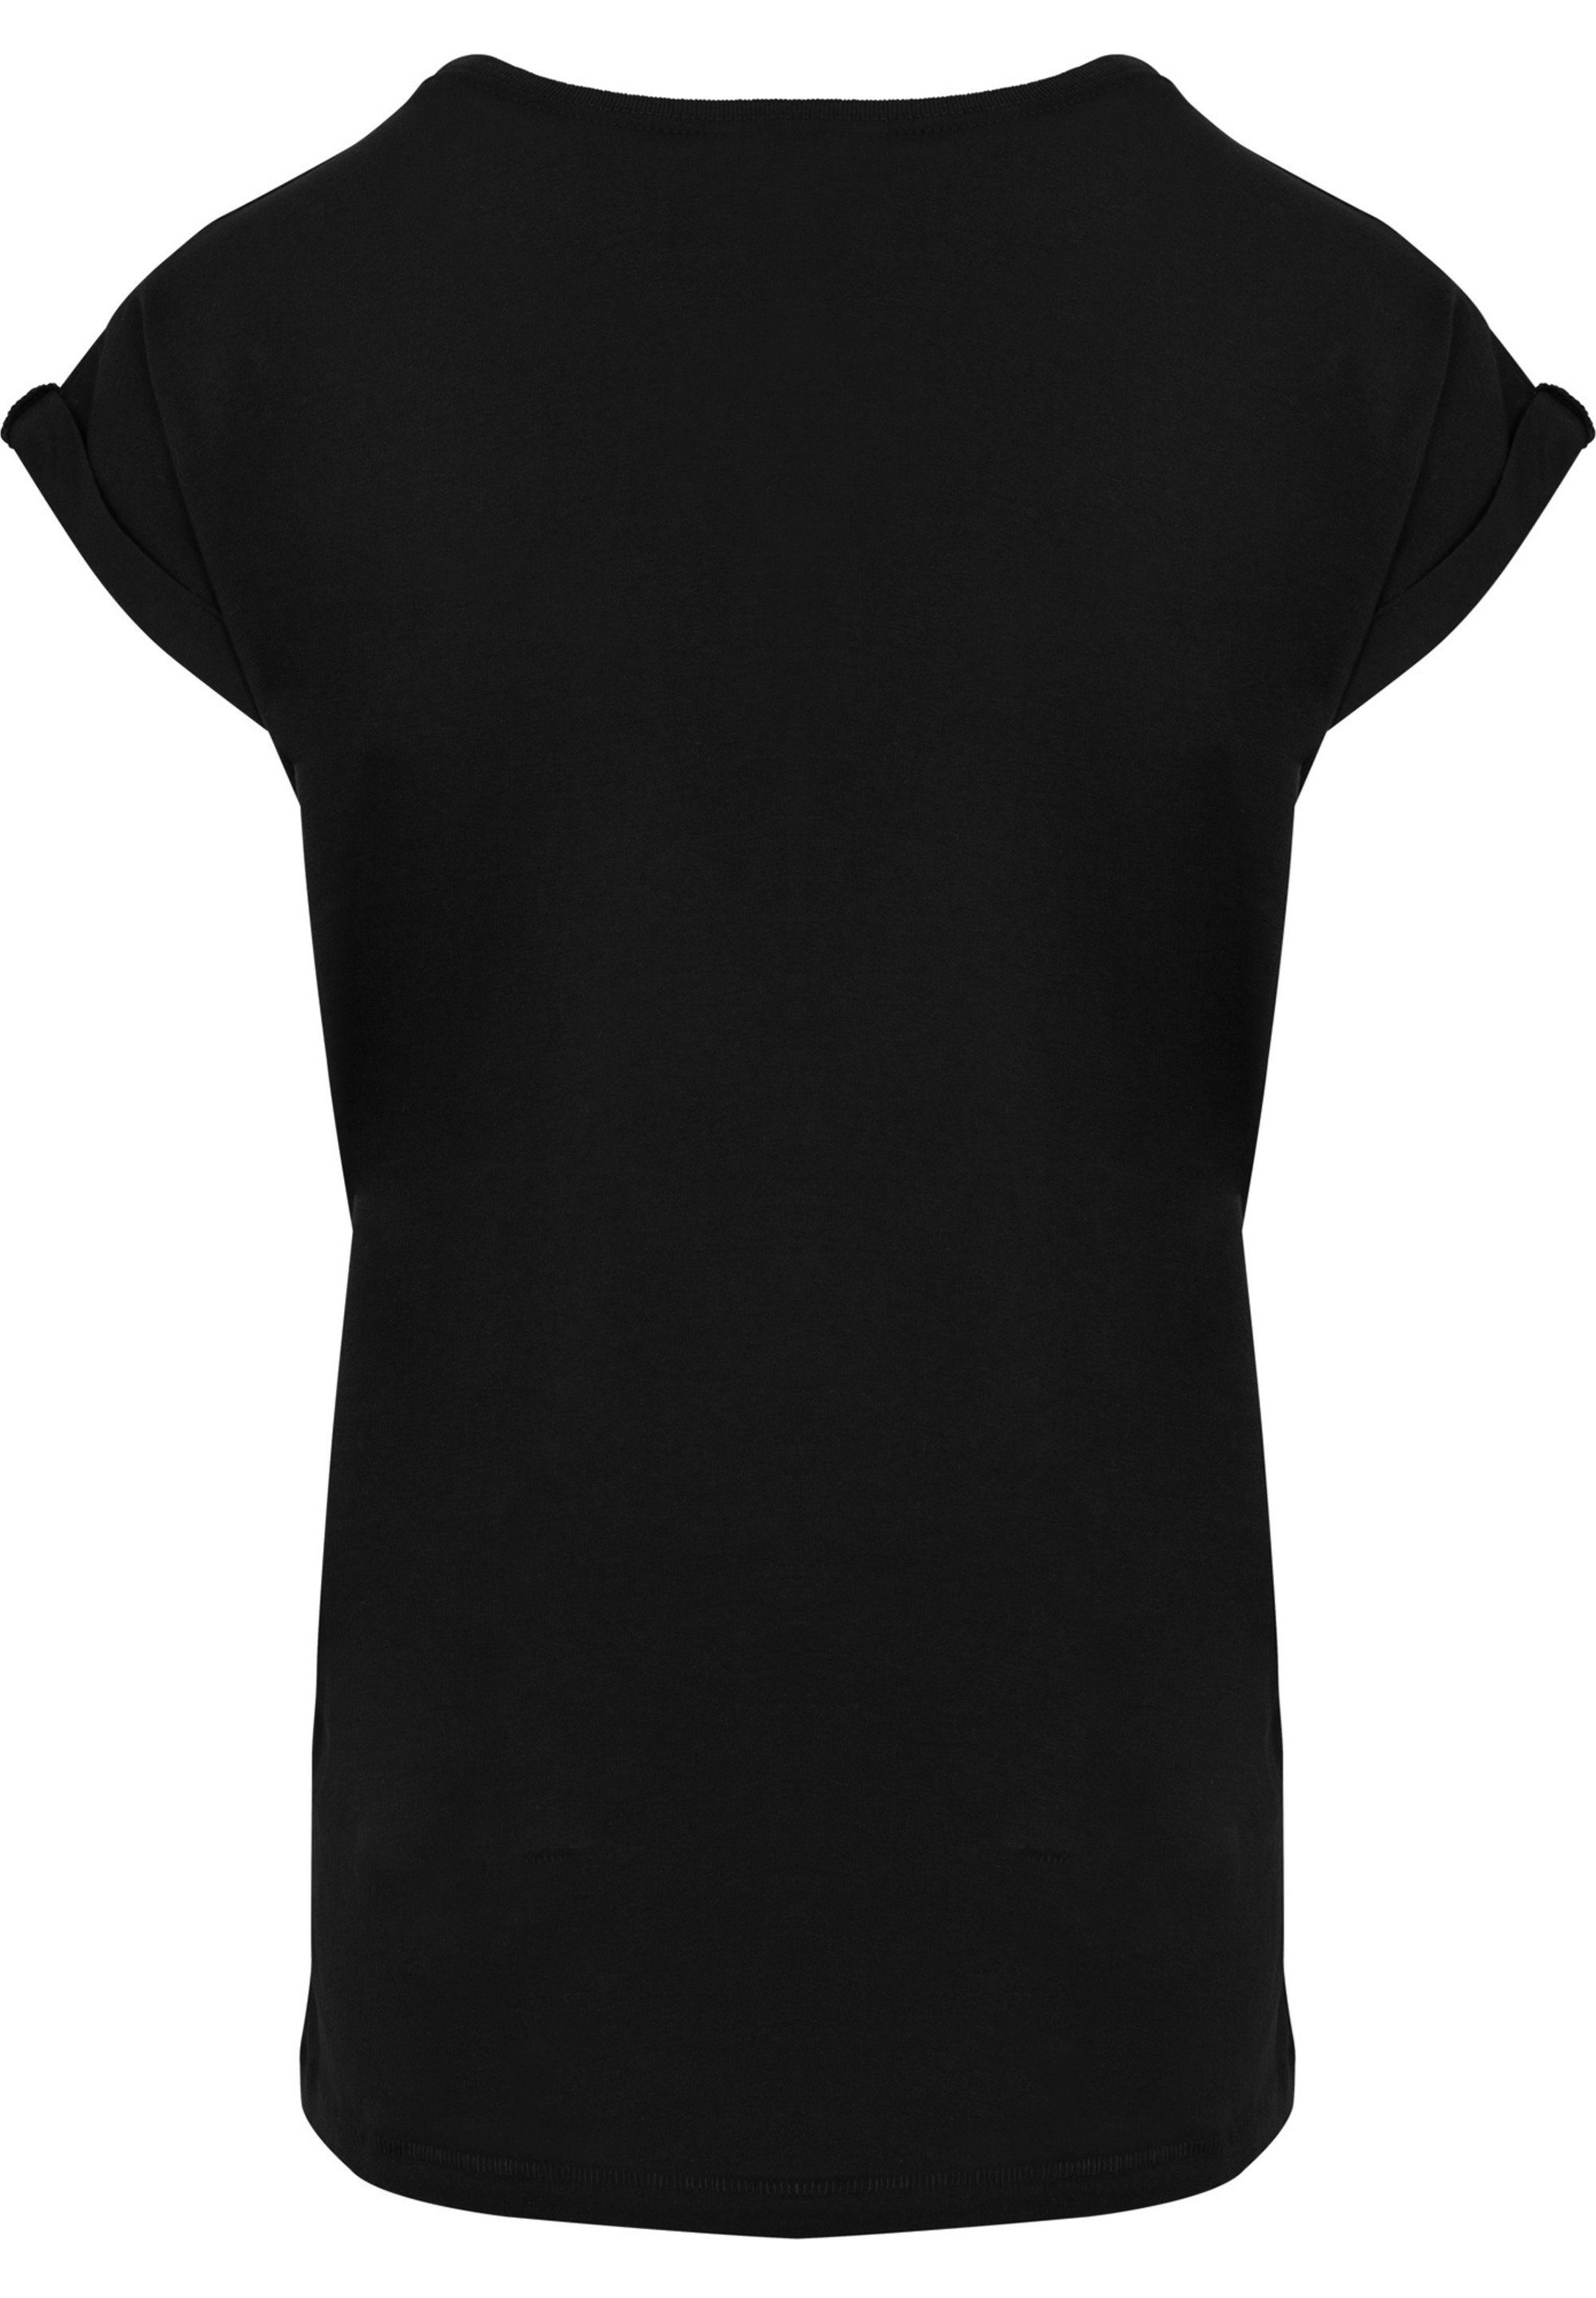 F4NT4STIC T-Shirt Ärmel,Bedruckt Merch,Regular-Fit,Kurze F4NT4STIC T-Shirt Damen,Premium